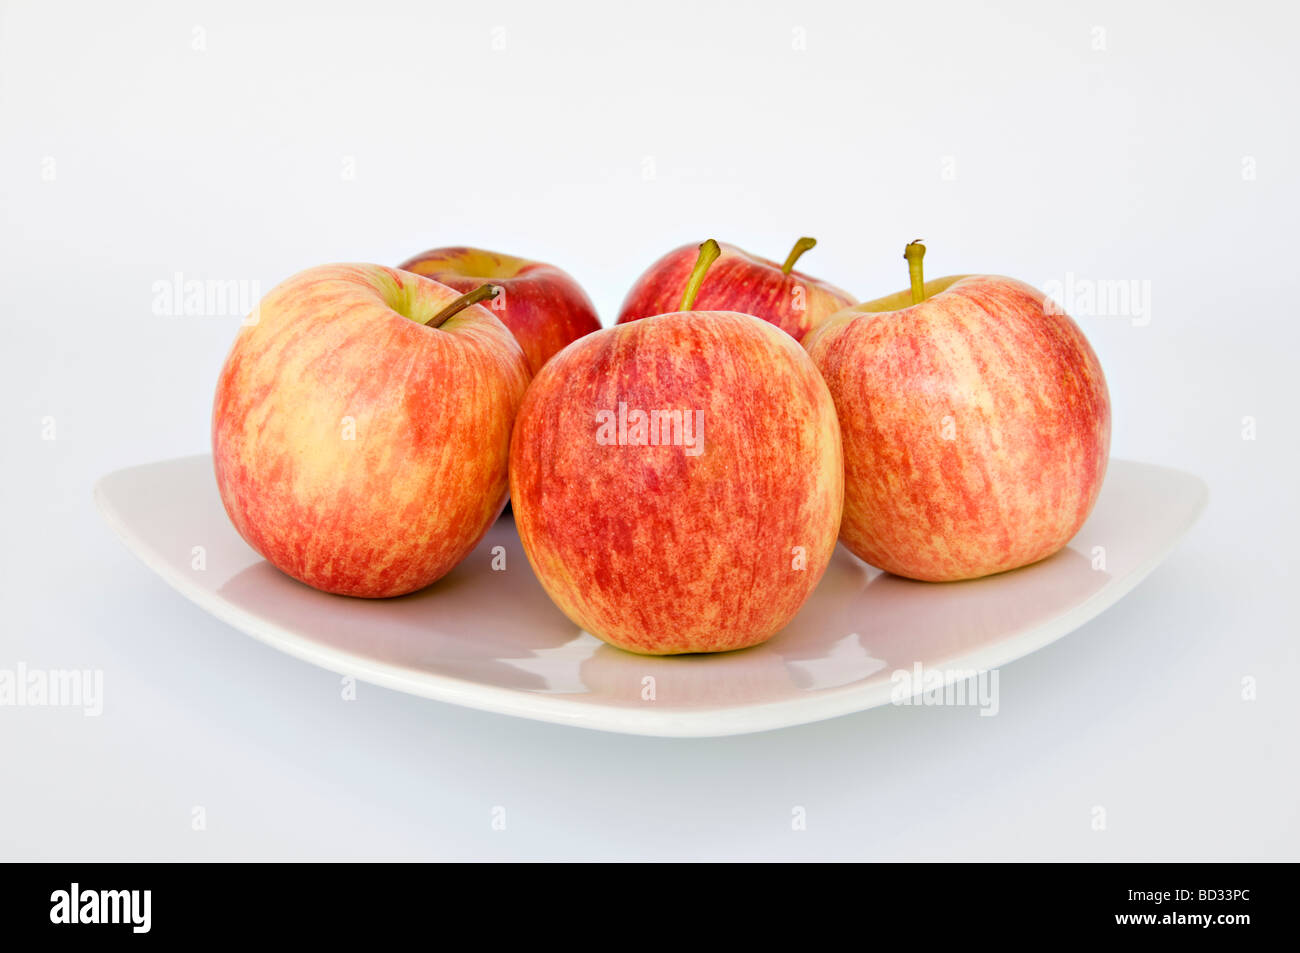 Studioaufnahme von fünf roten Gala Äpfel auf einem weißen Teller vor weißem Hintergrund Stockfoto